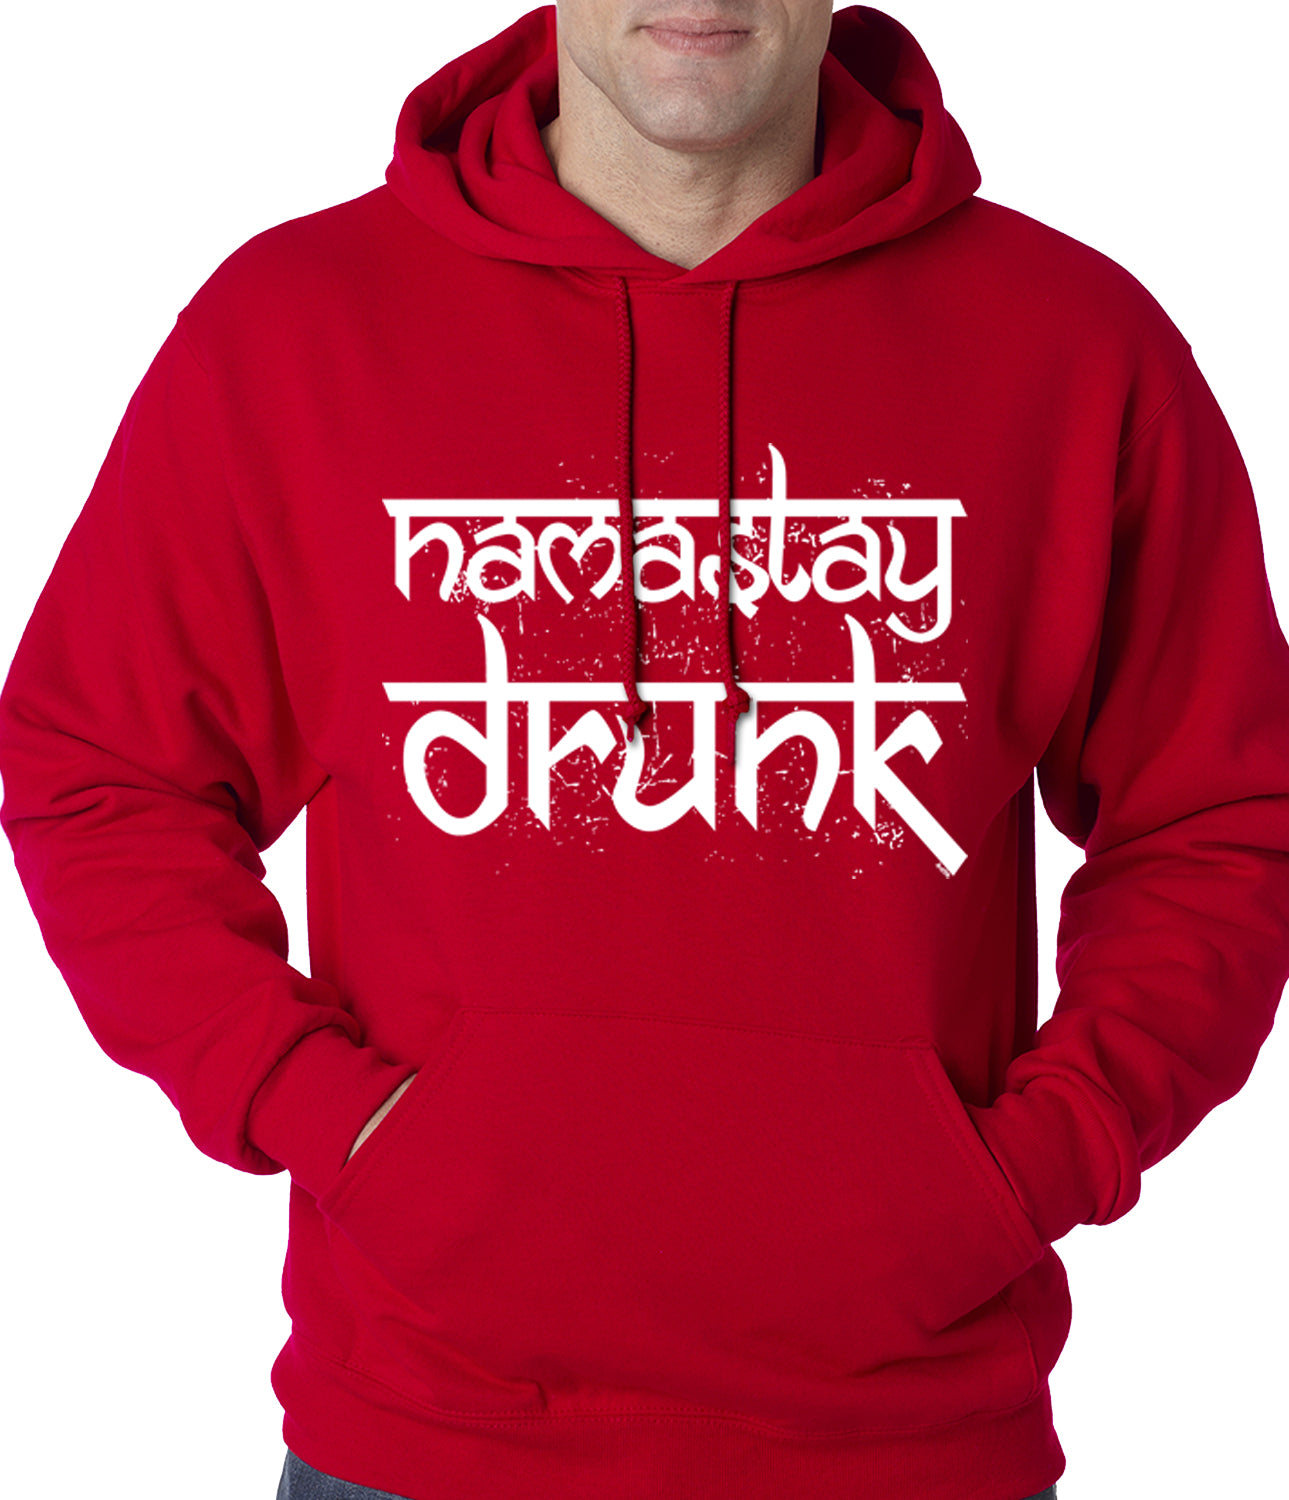 Namastay Drunk Funny Adult Hoodie